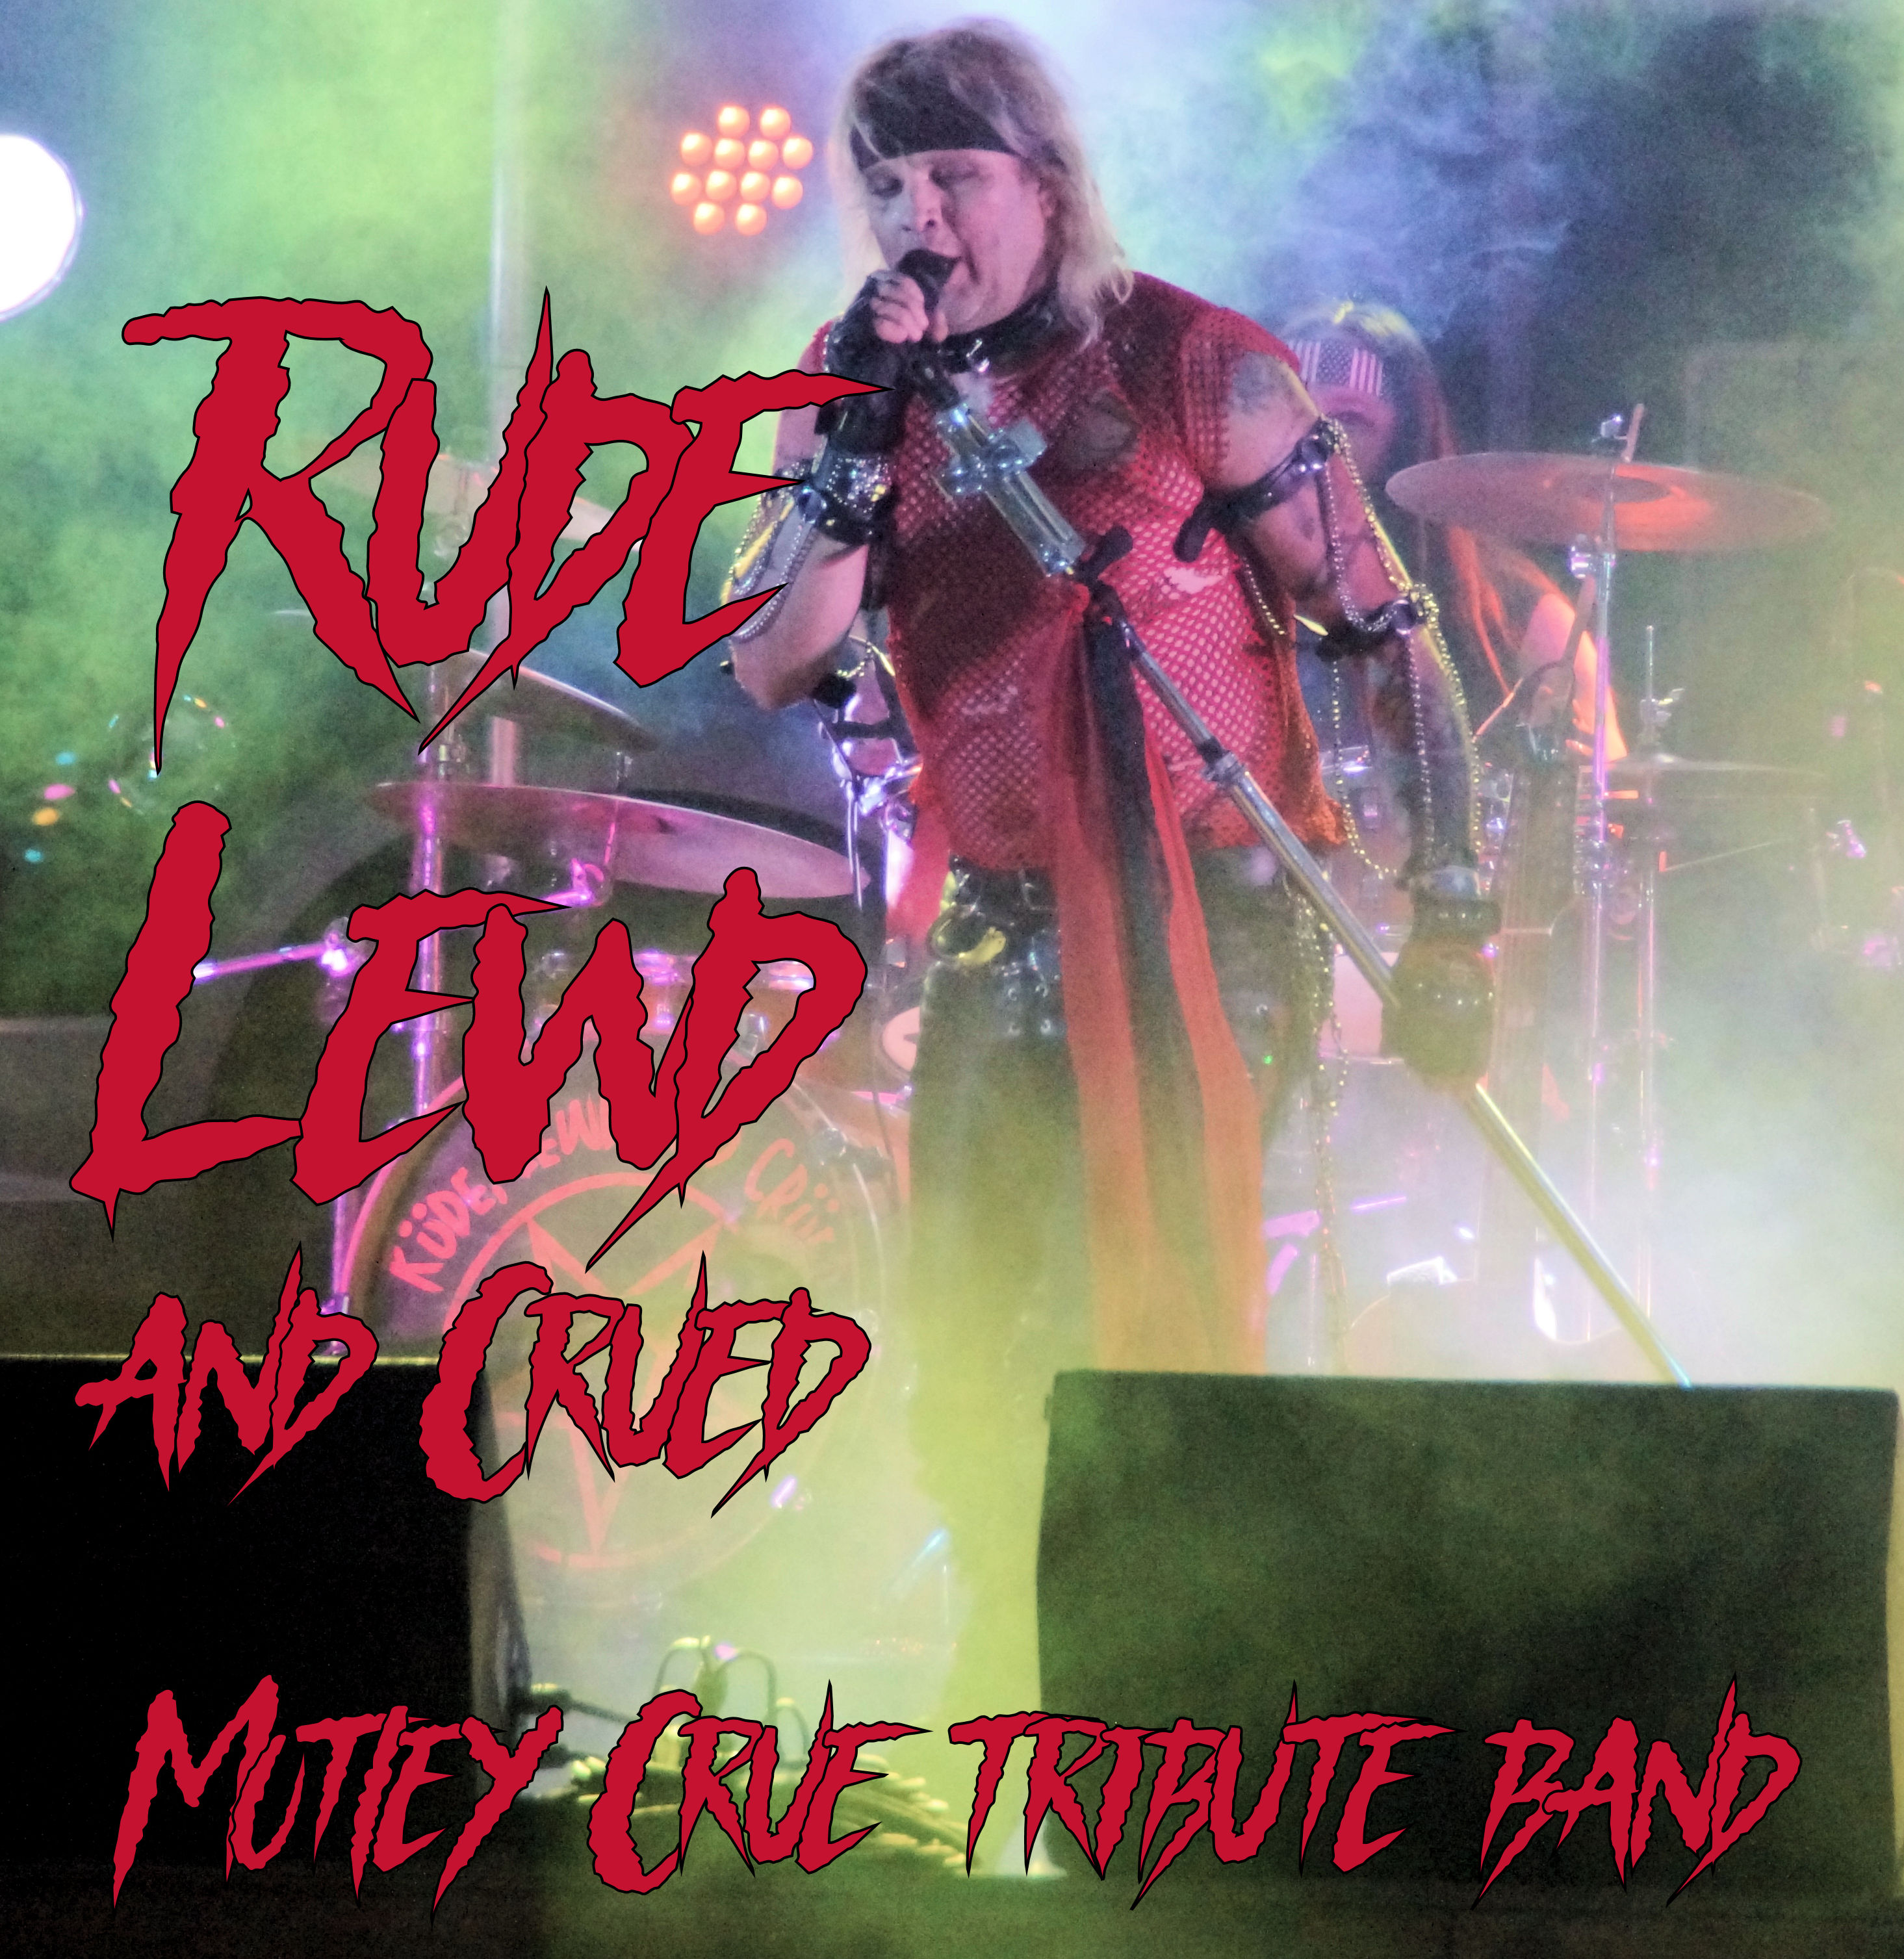 rude lewd and crued.  Motley Crue tribute band.